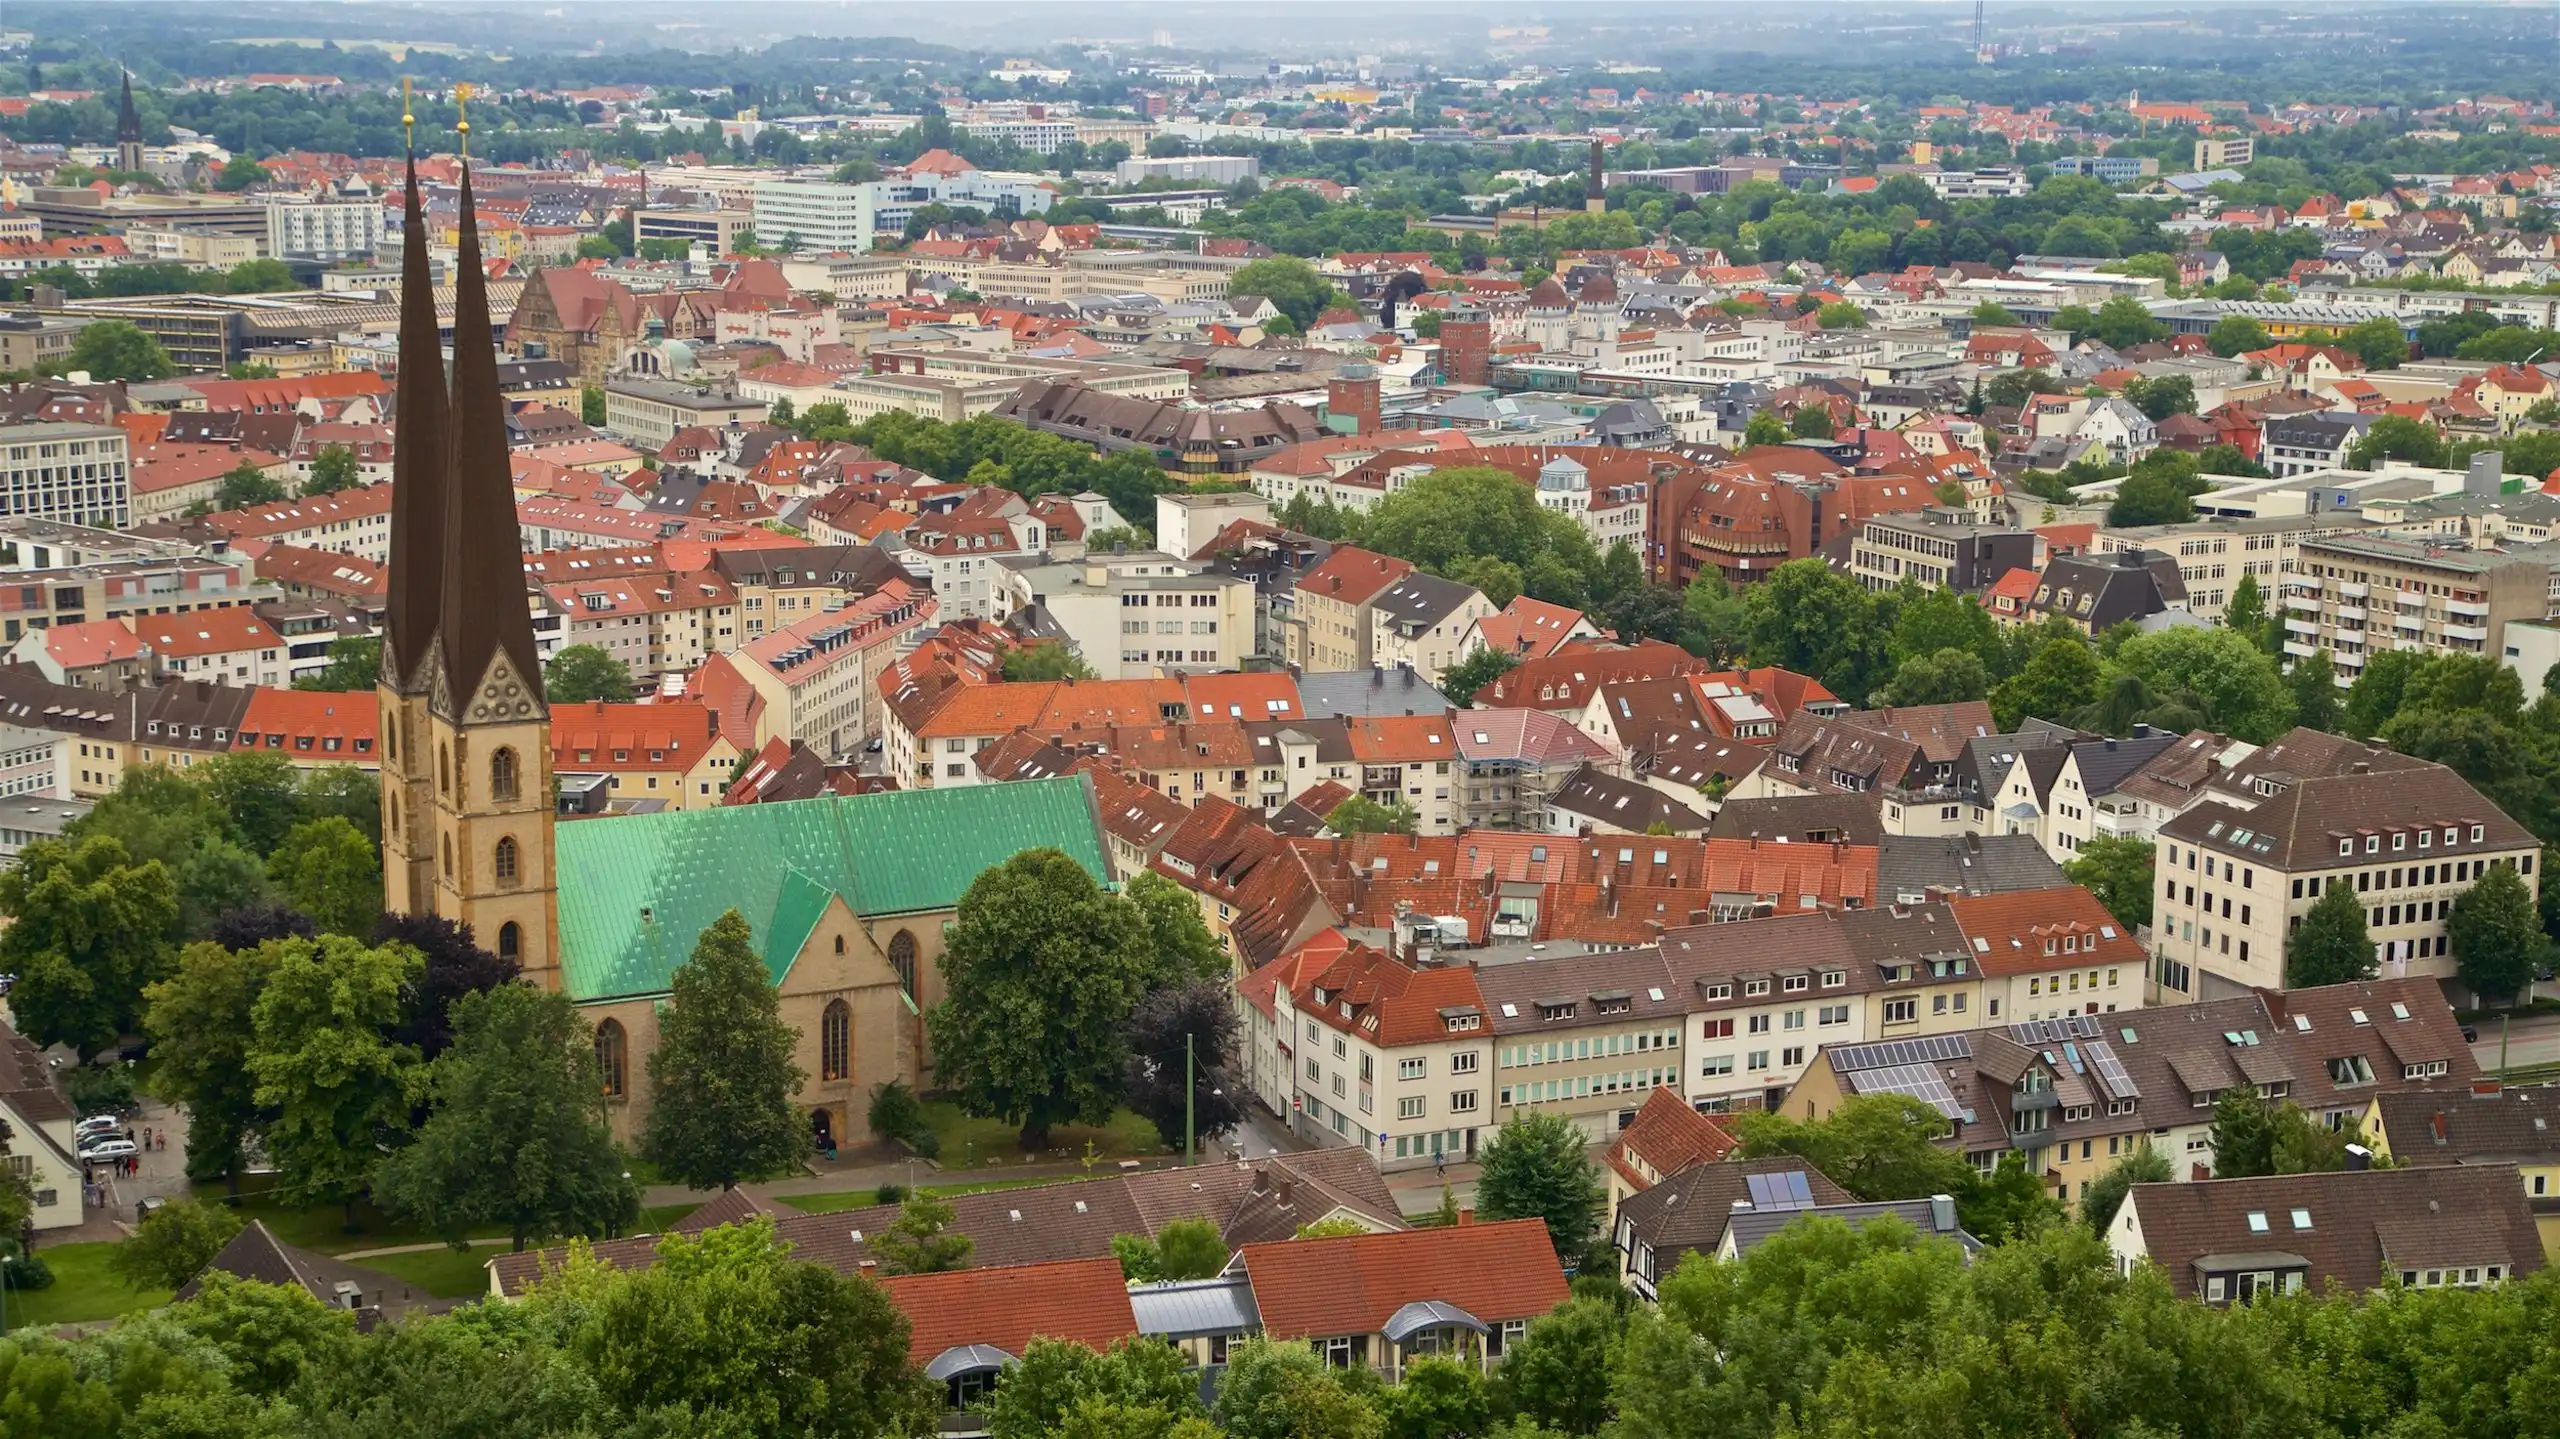 Bielefeld tourism